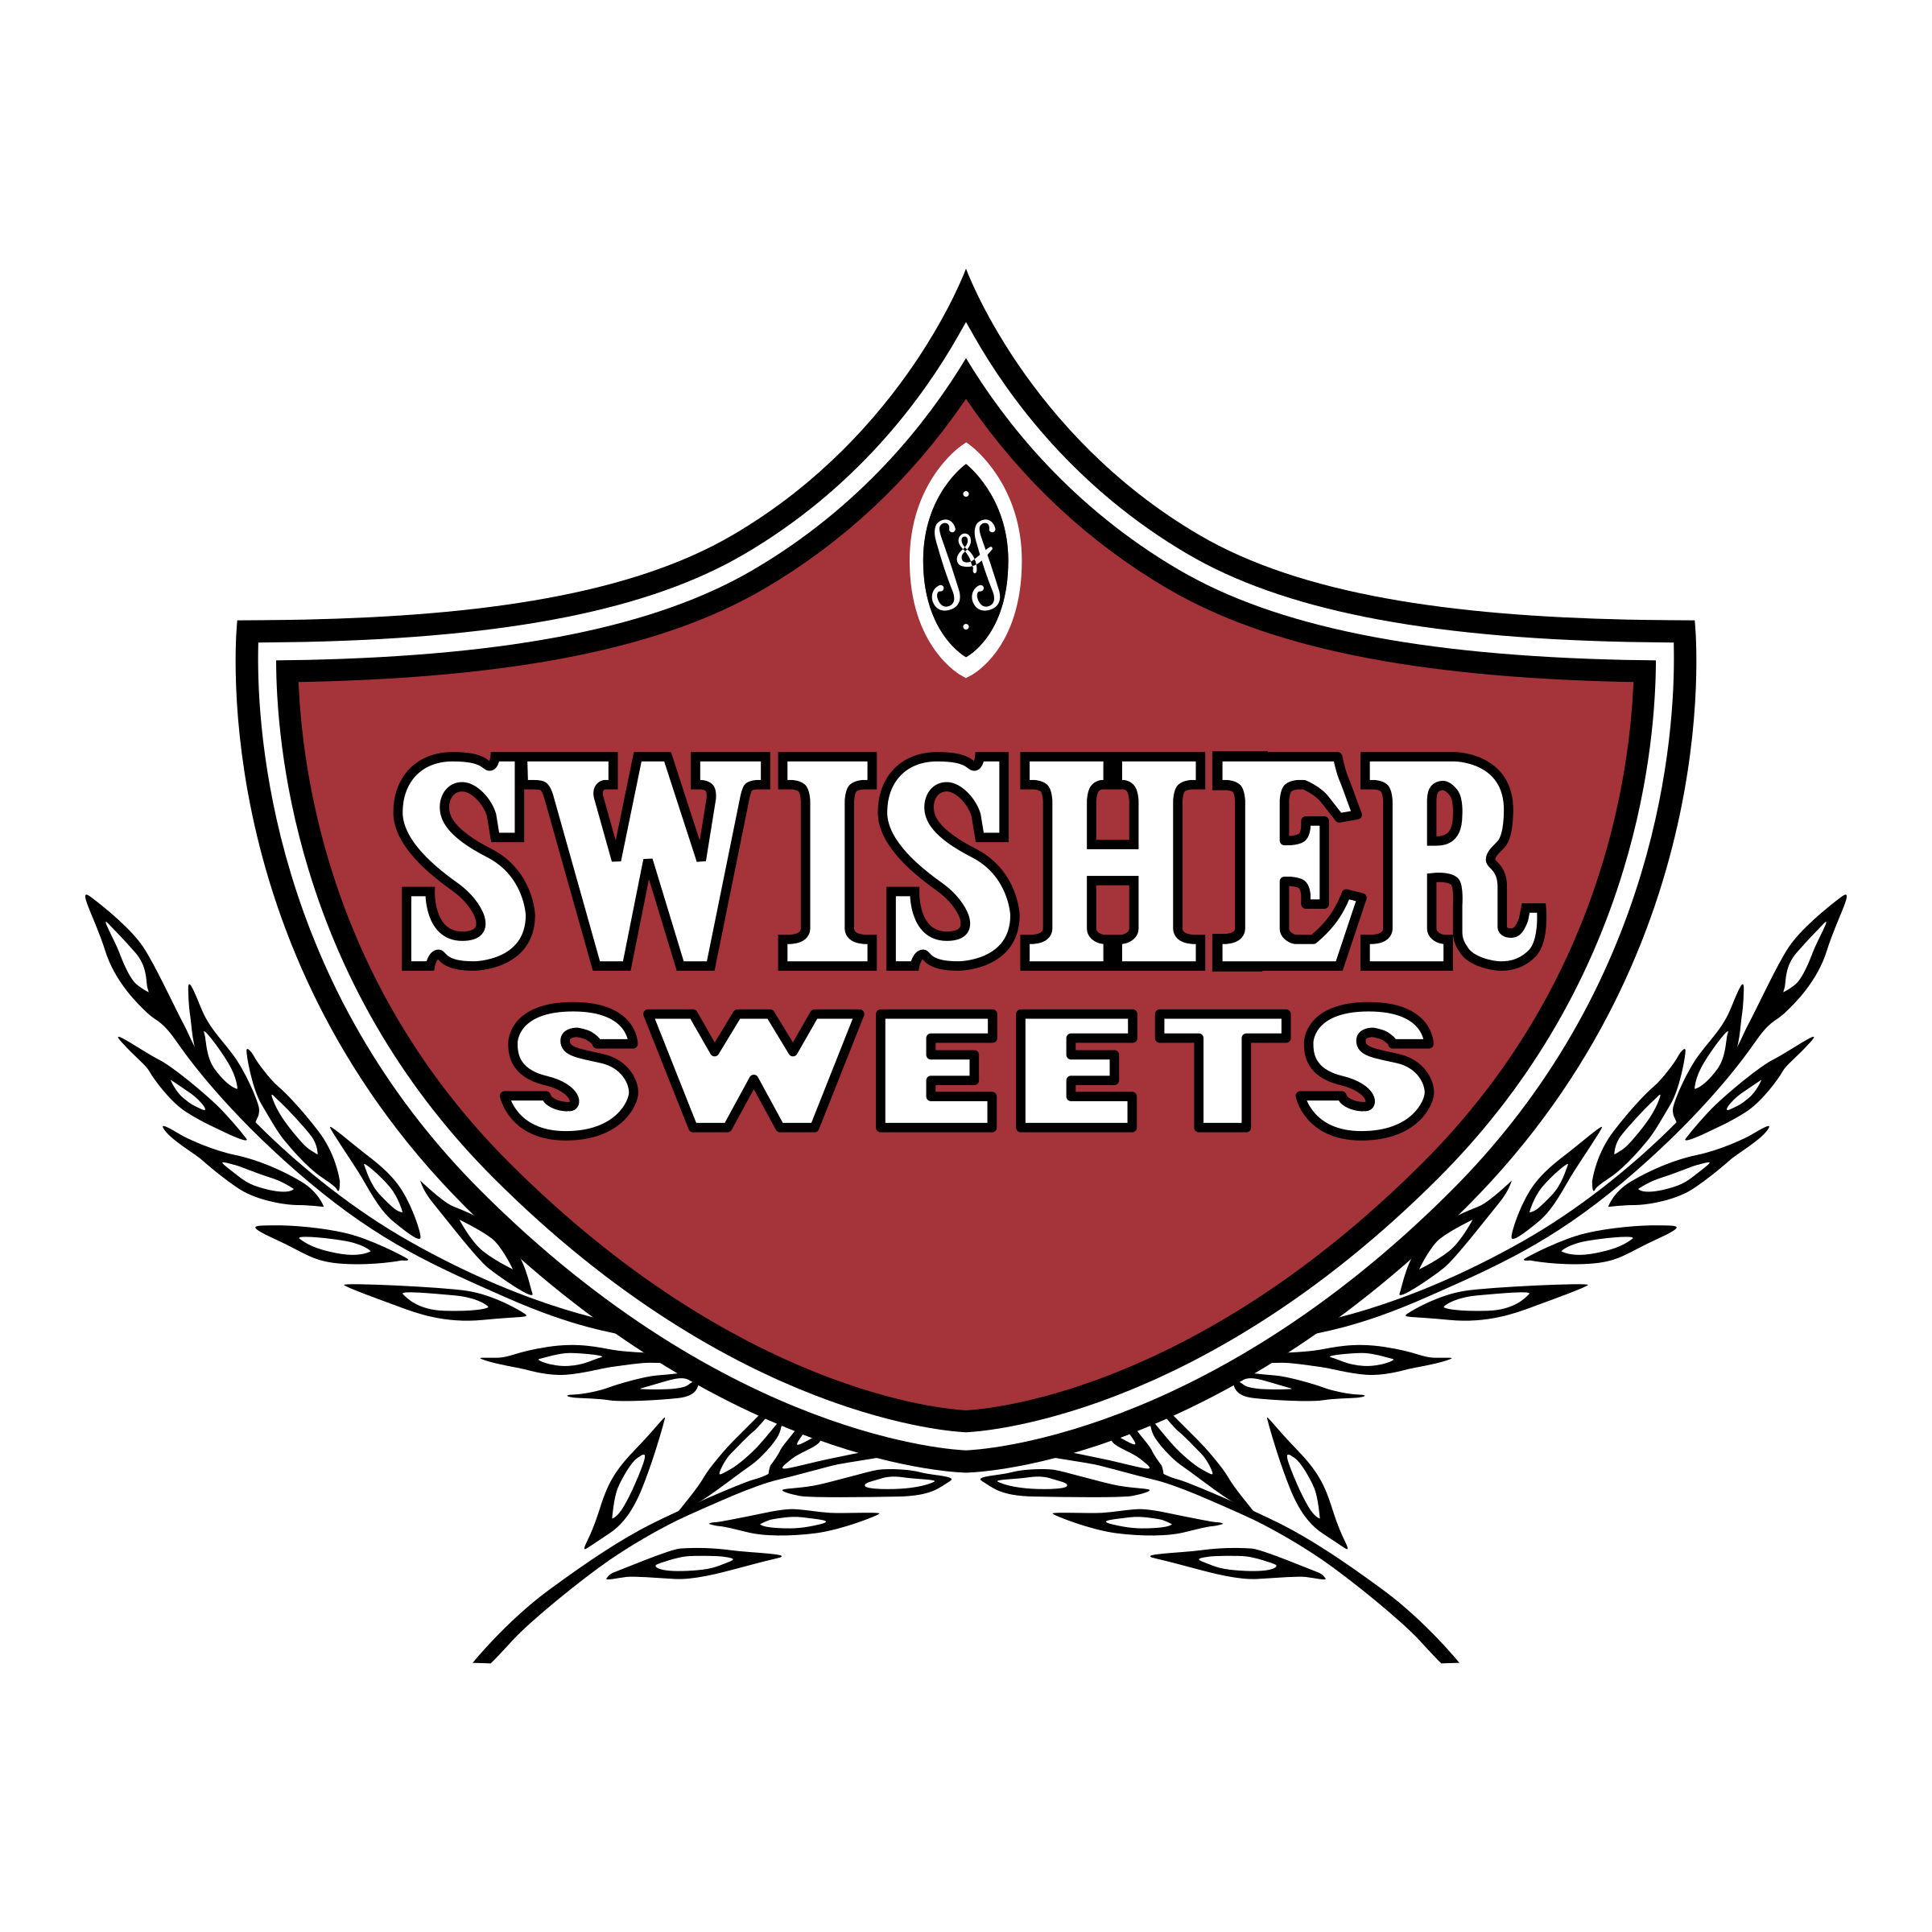 SWISHER SWEETS